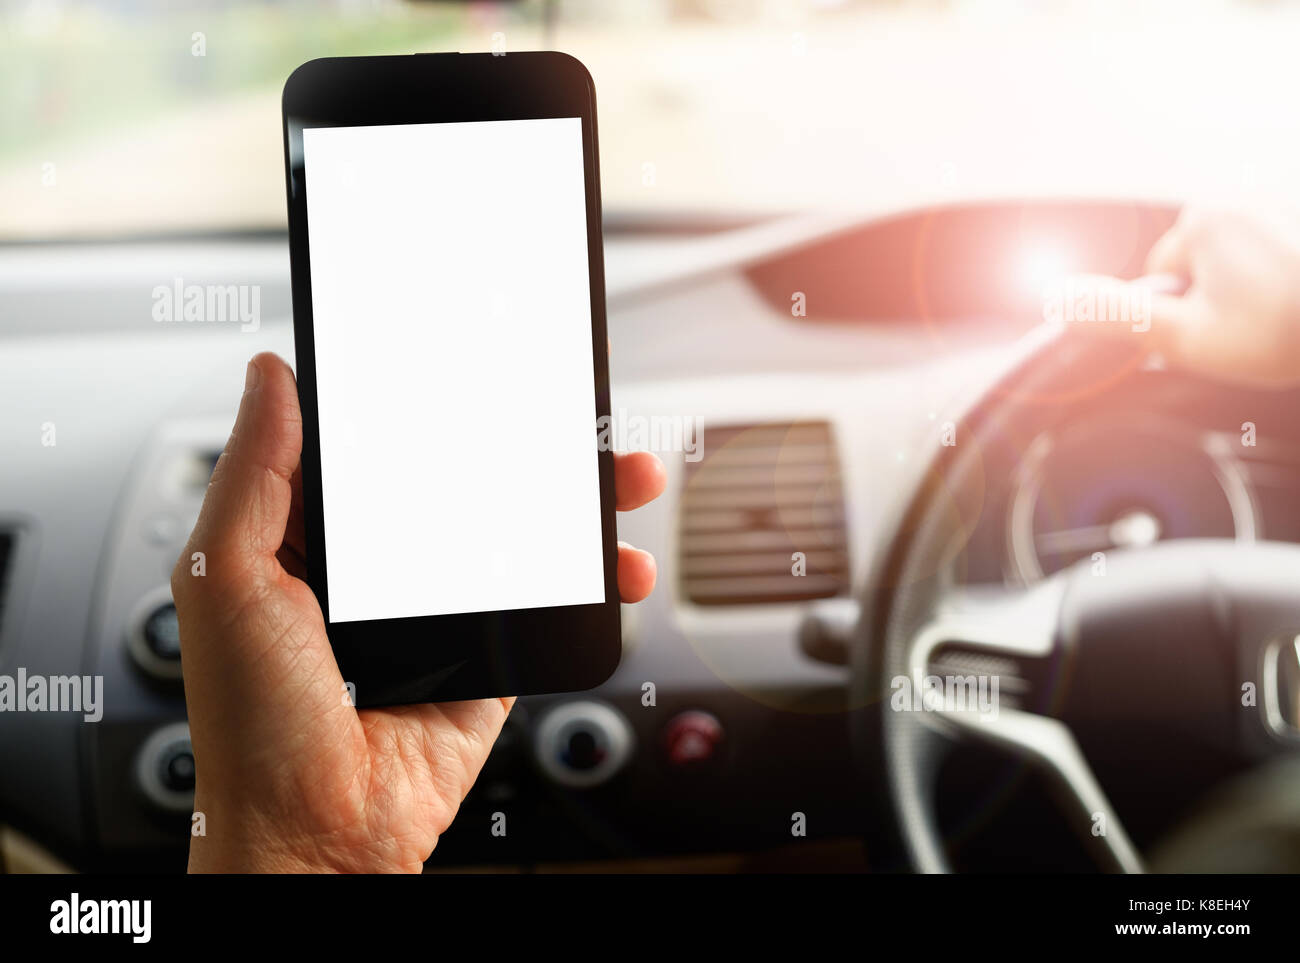 La mano es la celebración de un teléfono con pantalla táctil aislado en el coche. Foto de stock